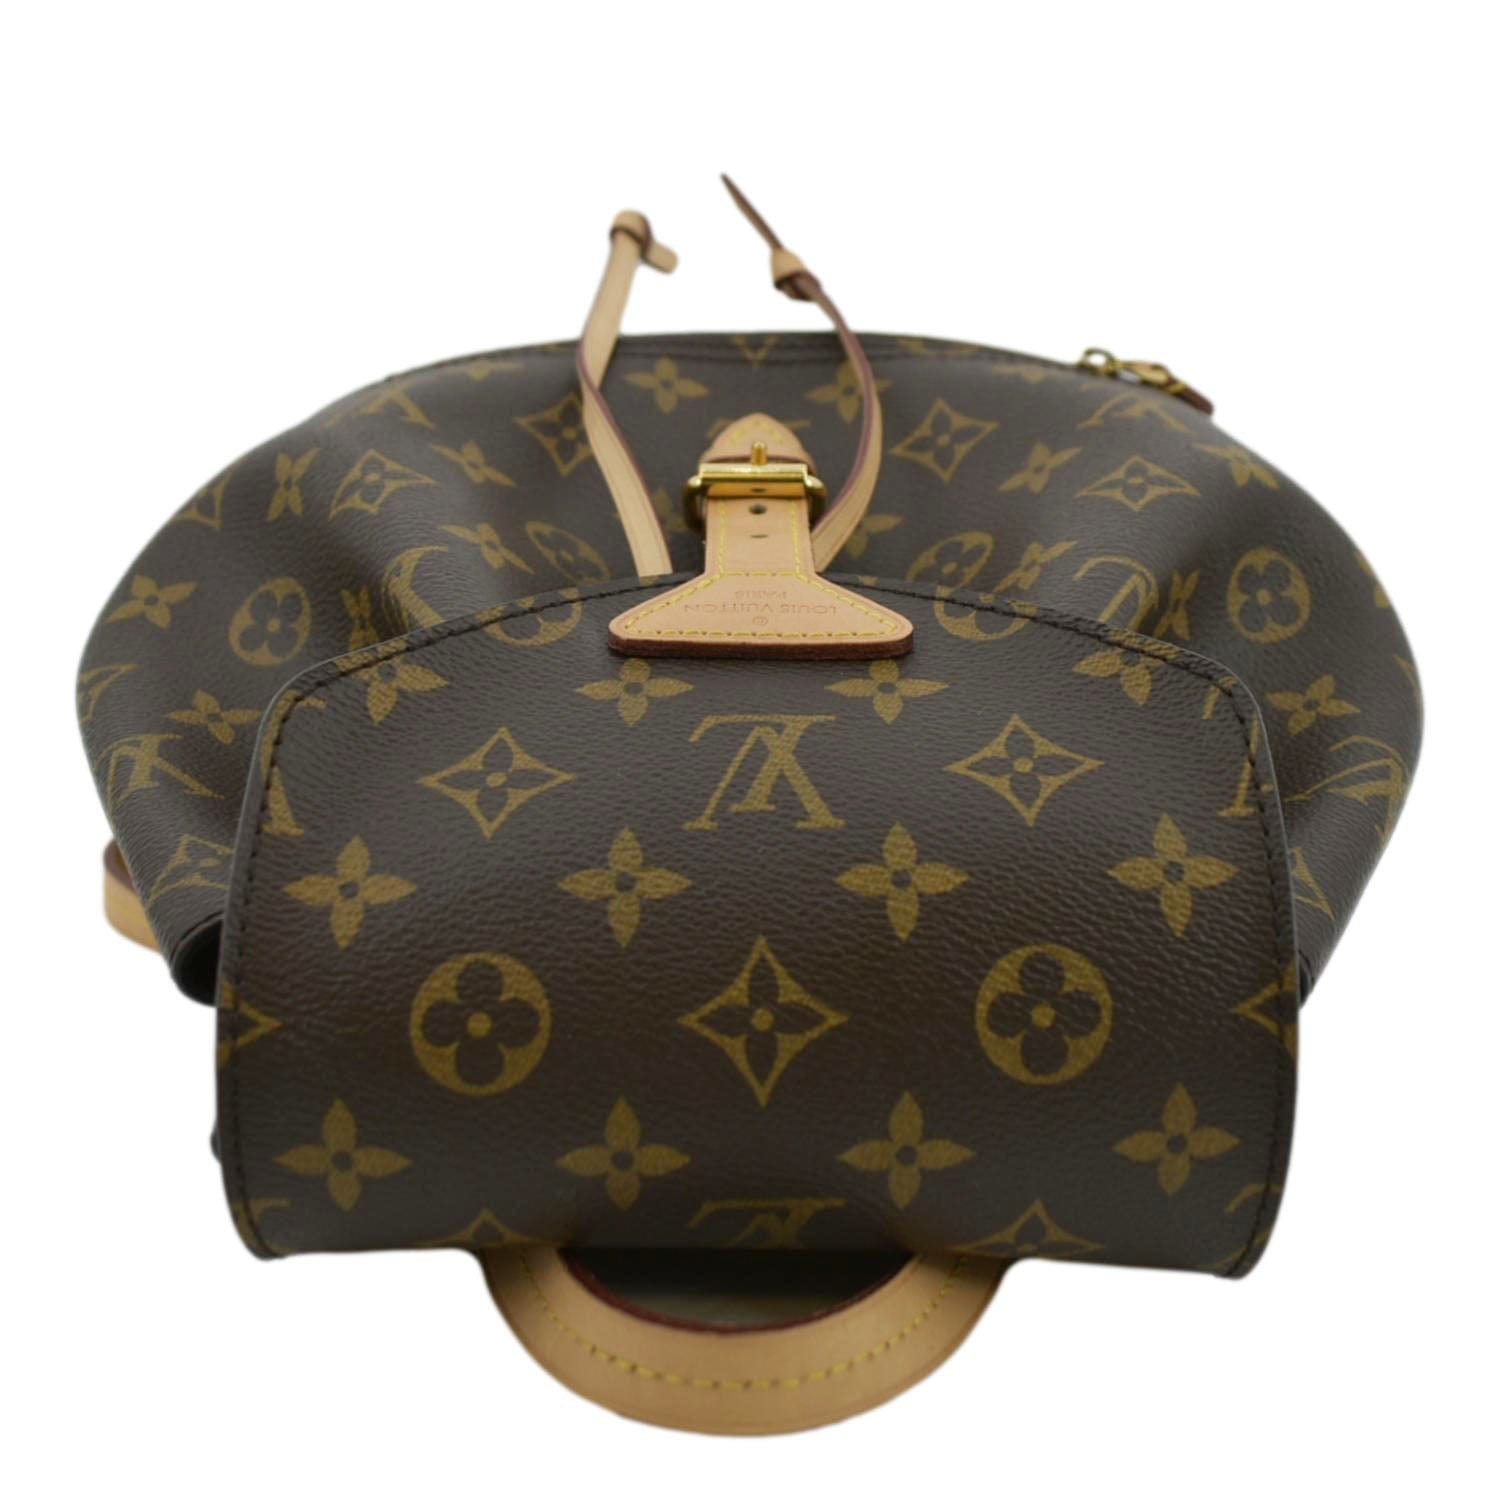 Louis Vuitton Brown Canvas Monogram Montsouris PM Backpack - ShopStyle